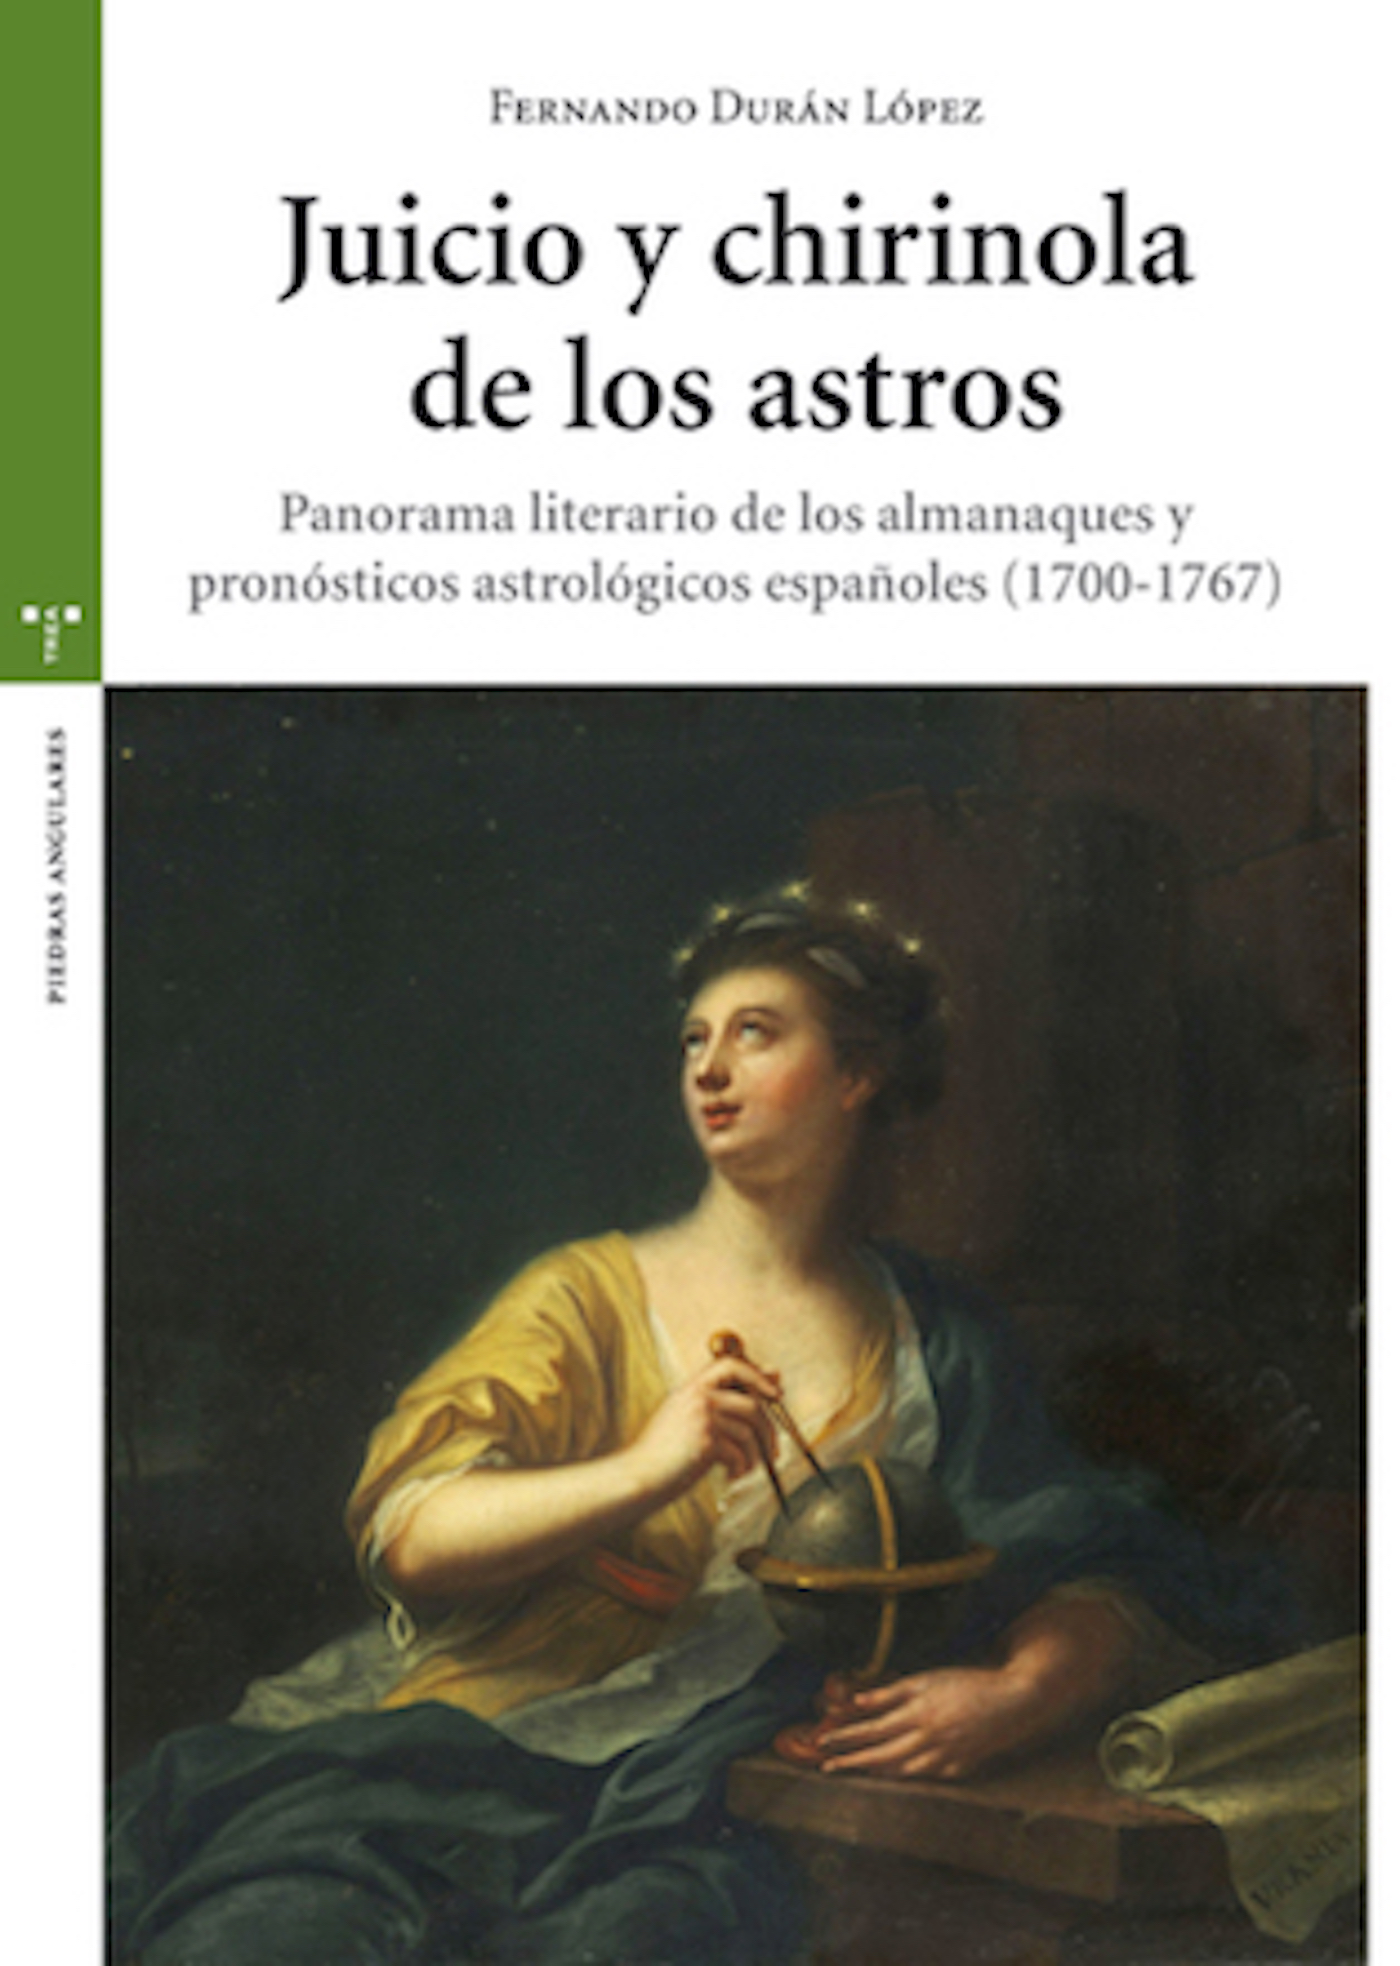 Juicio y chirinola de los astros   «Panorama literario de los almanaques y pronósticos astrológicos españoles (1700-1767)»